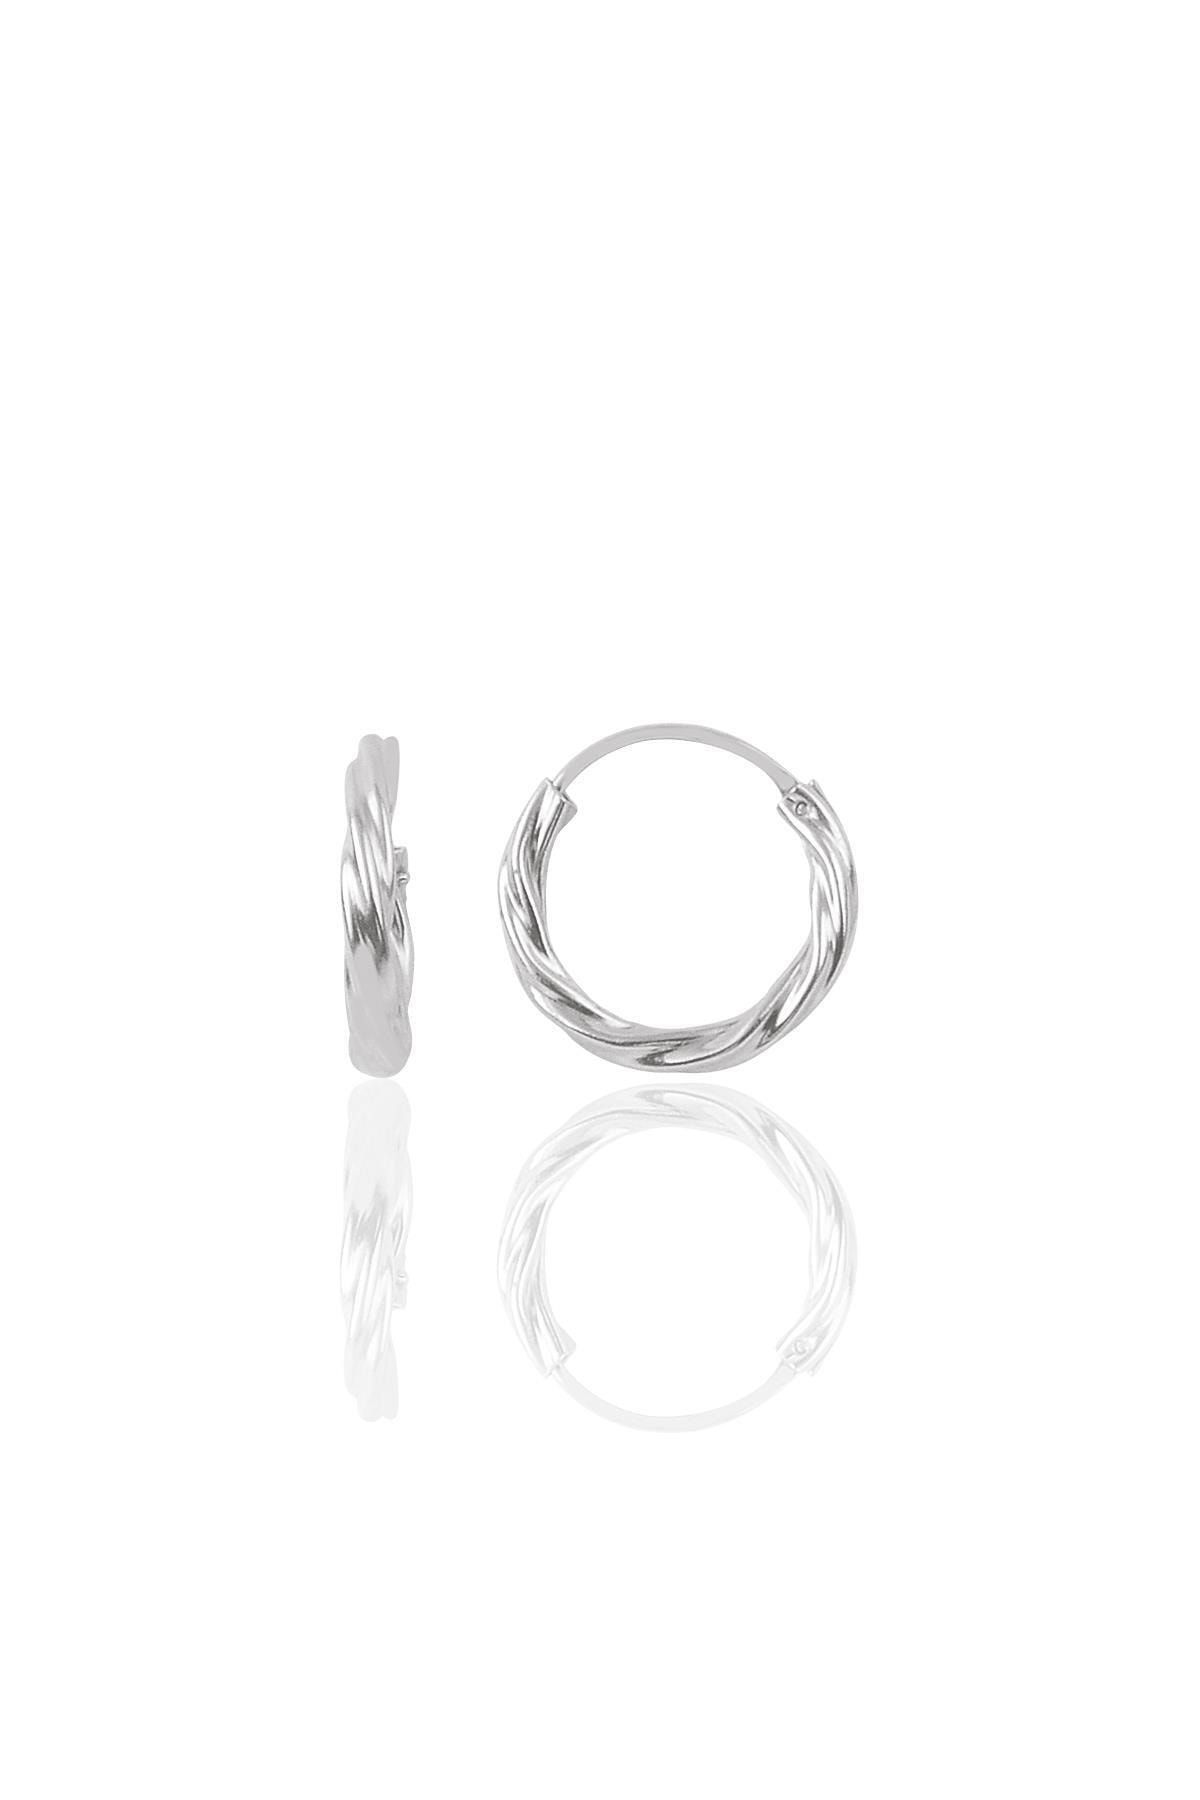 Söğütlü Silver Gümüş 14 Mm Burgu Modeli Halka Küpe